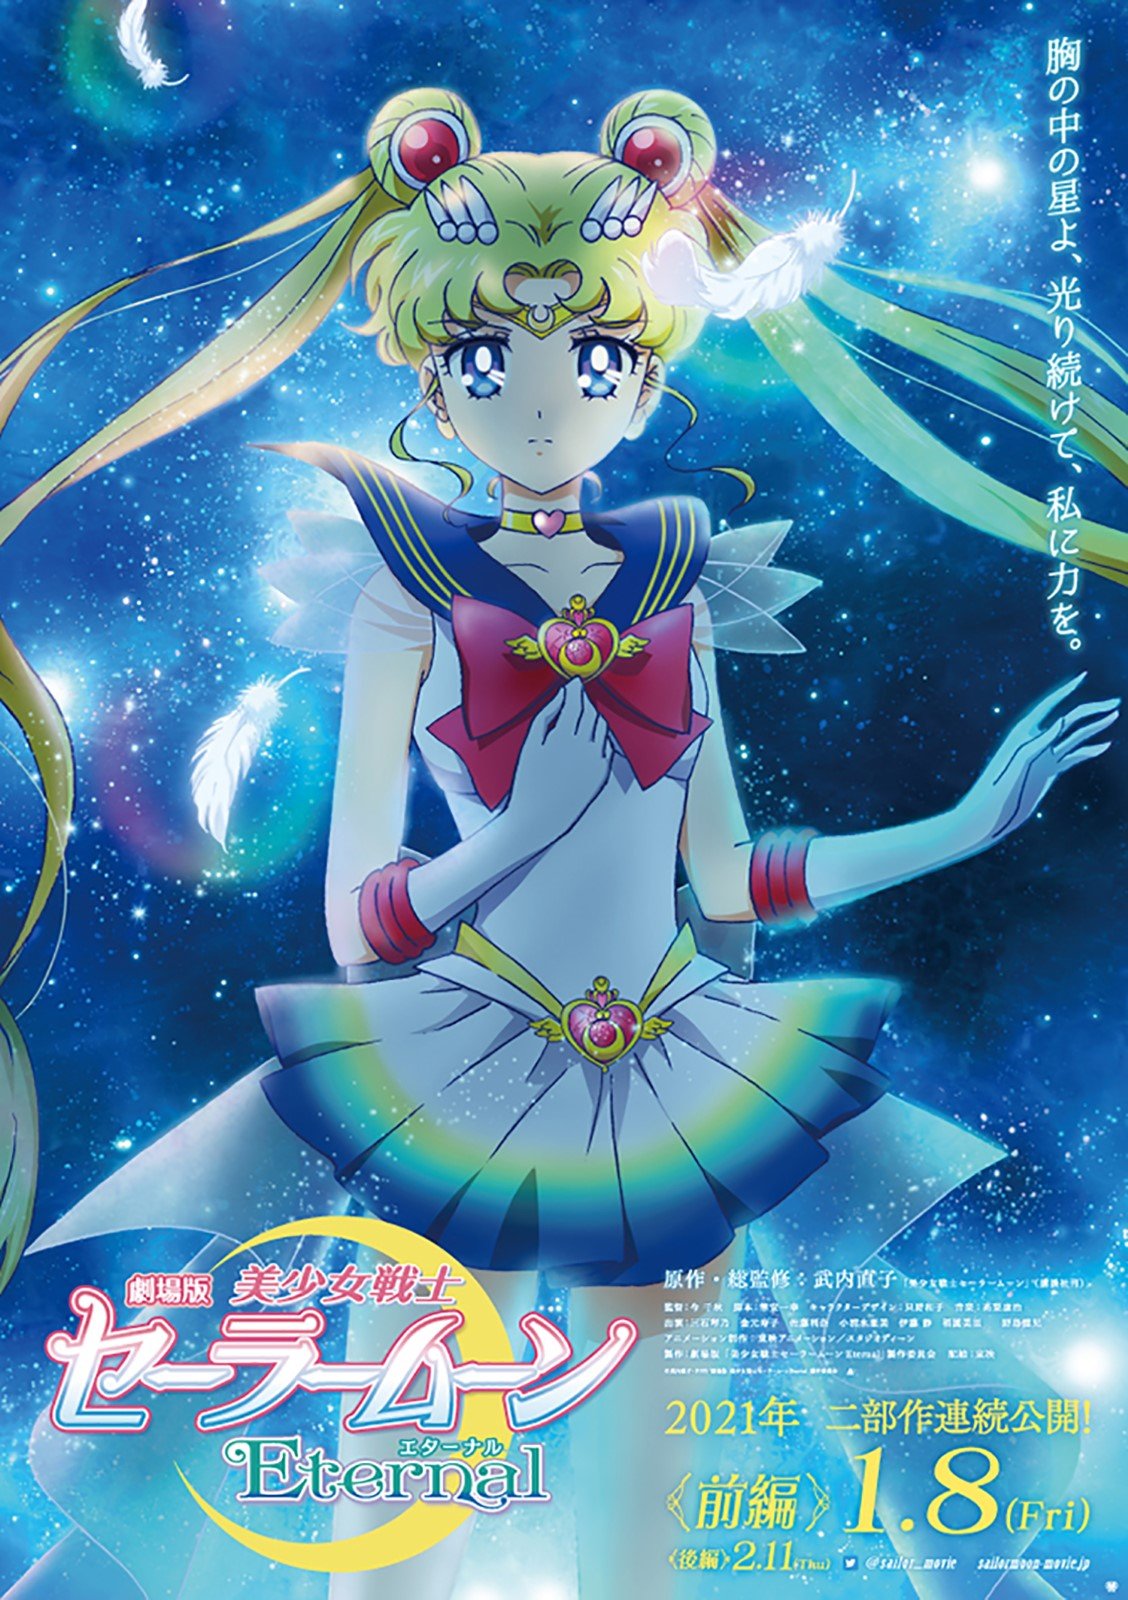 Sailor Moon: 10 coisas que você precisa saber